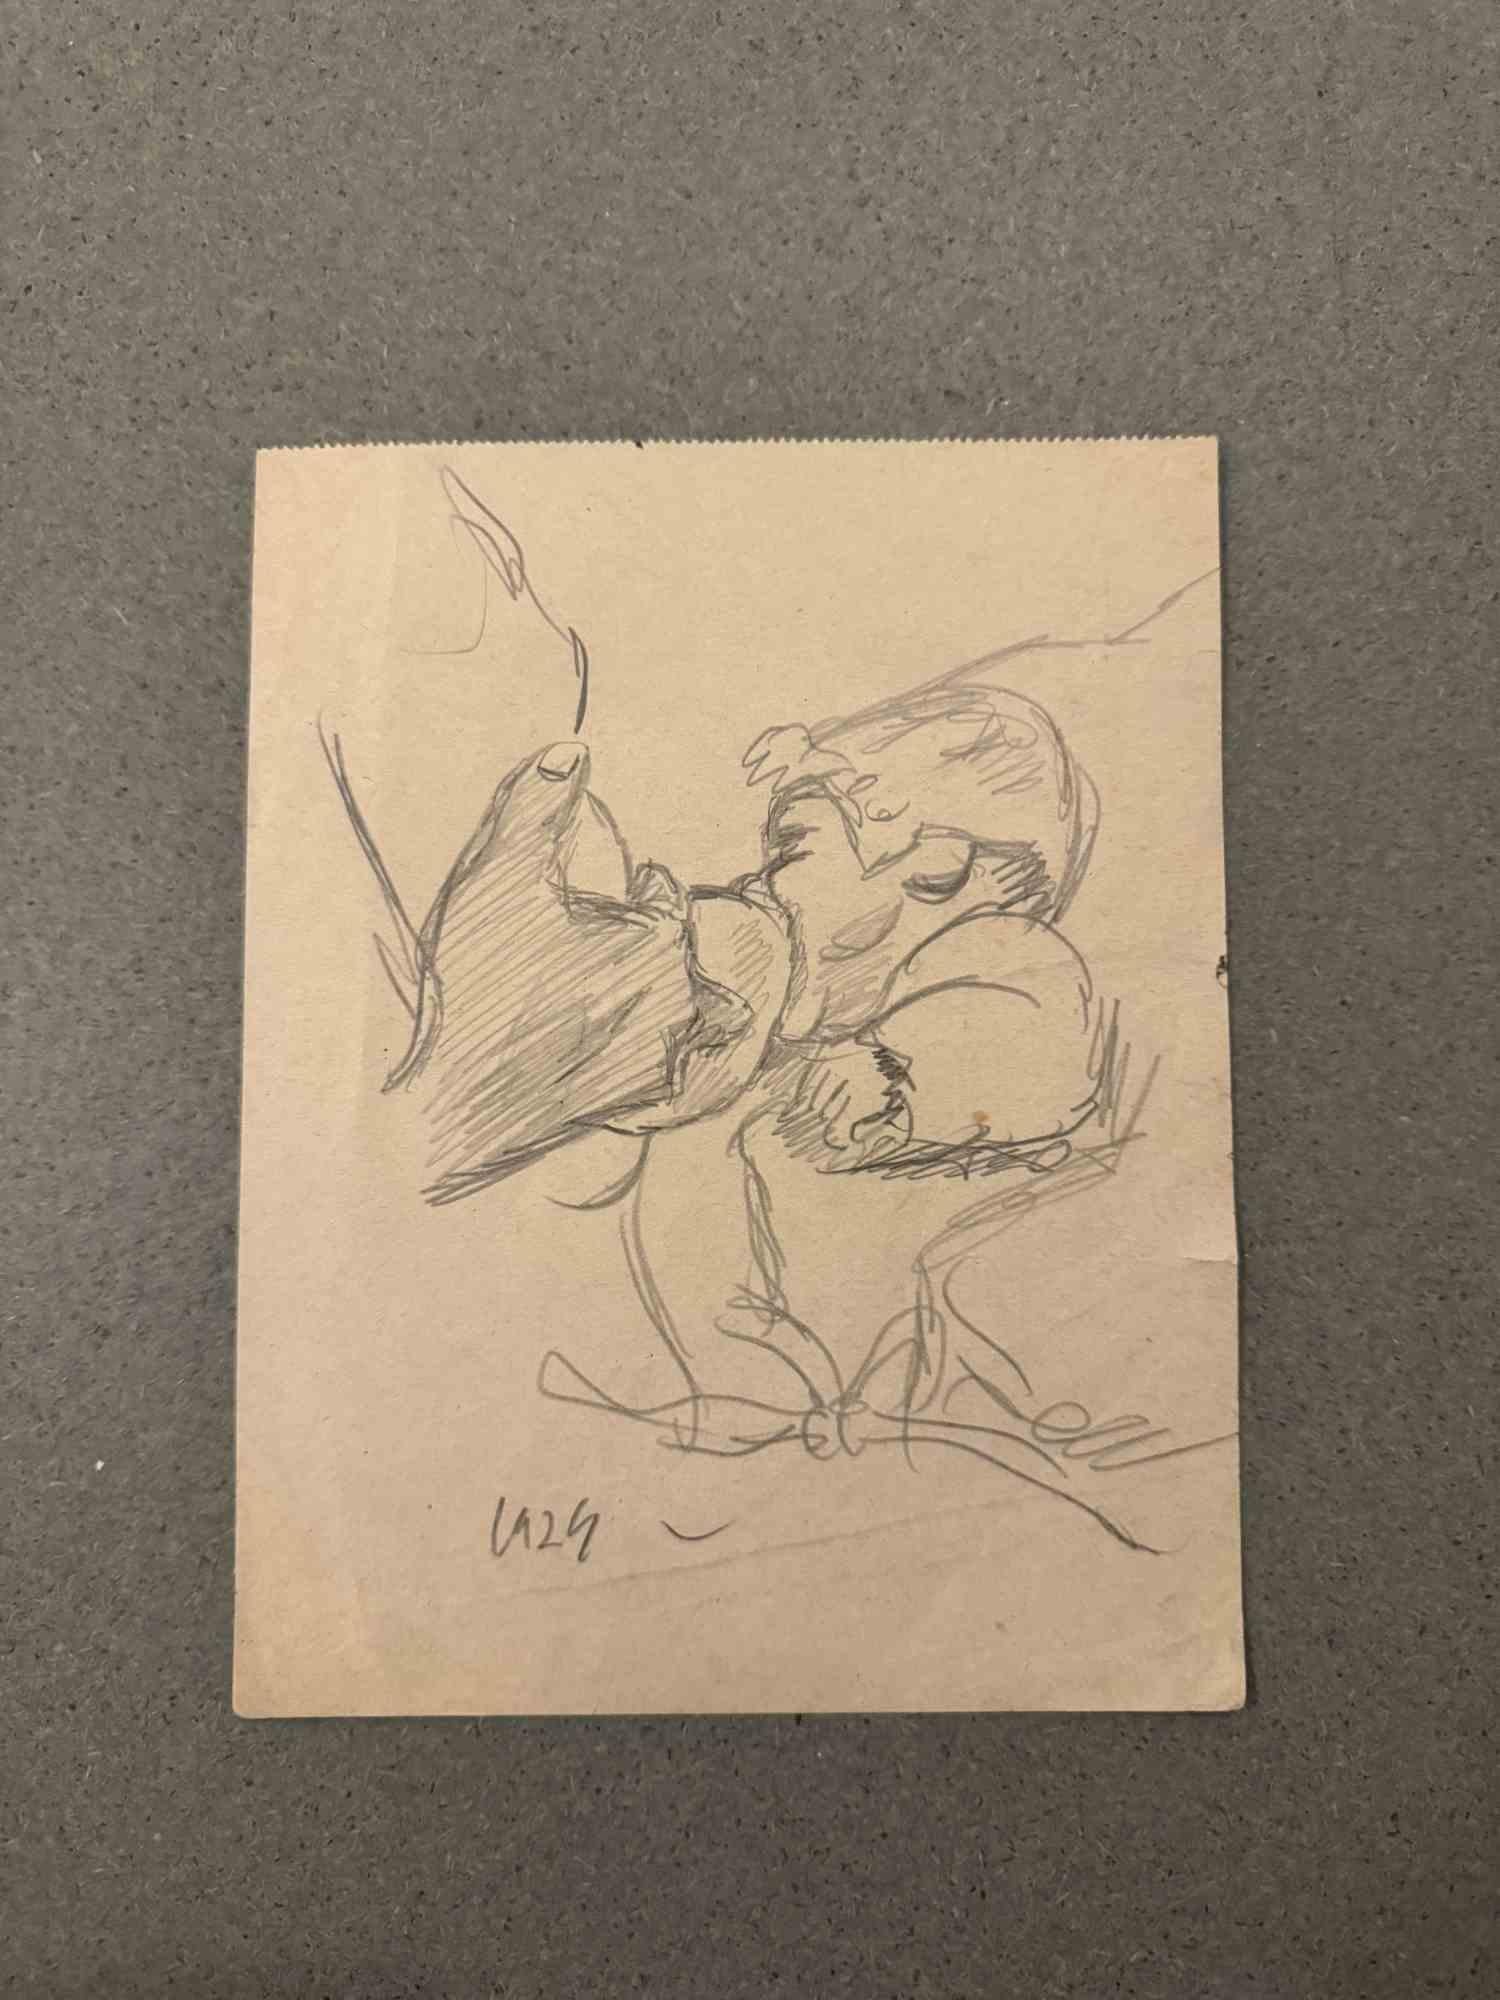 Baby est un dessin au crayon réalisé par Mino Maccari (1924-1989) au milieu du 20e siècle.

Signé à la main.

Bon état avec de légères rousseurs.

Mino Maccari (Sienne, 1924-Rome, 16 juin 1989) est un écrivain, peintre, graveur et journaliste